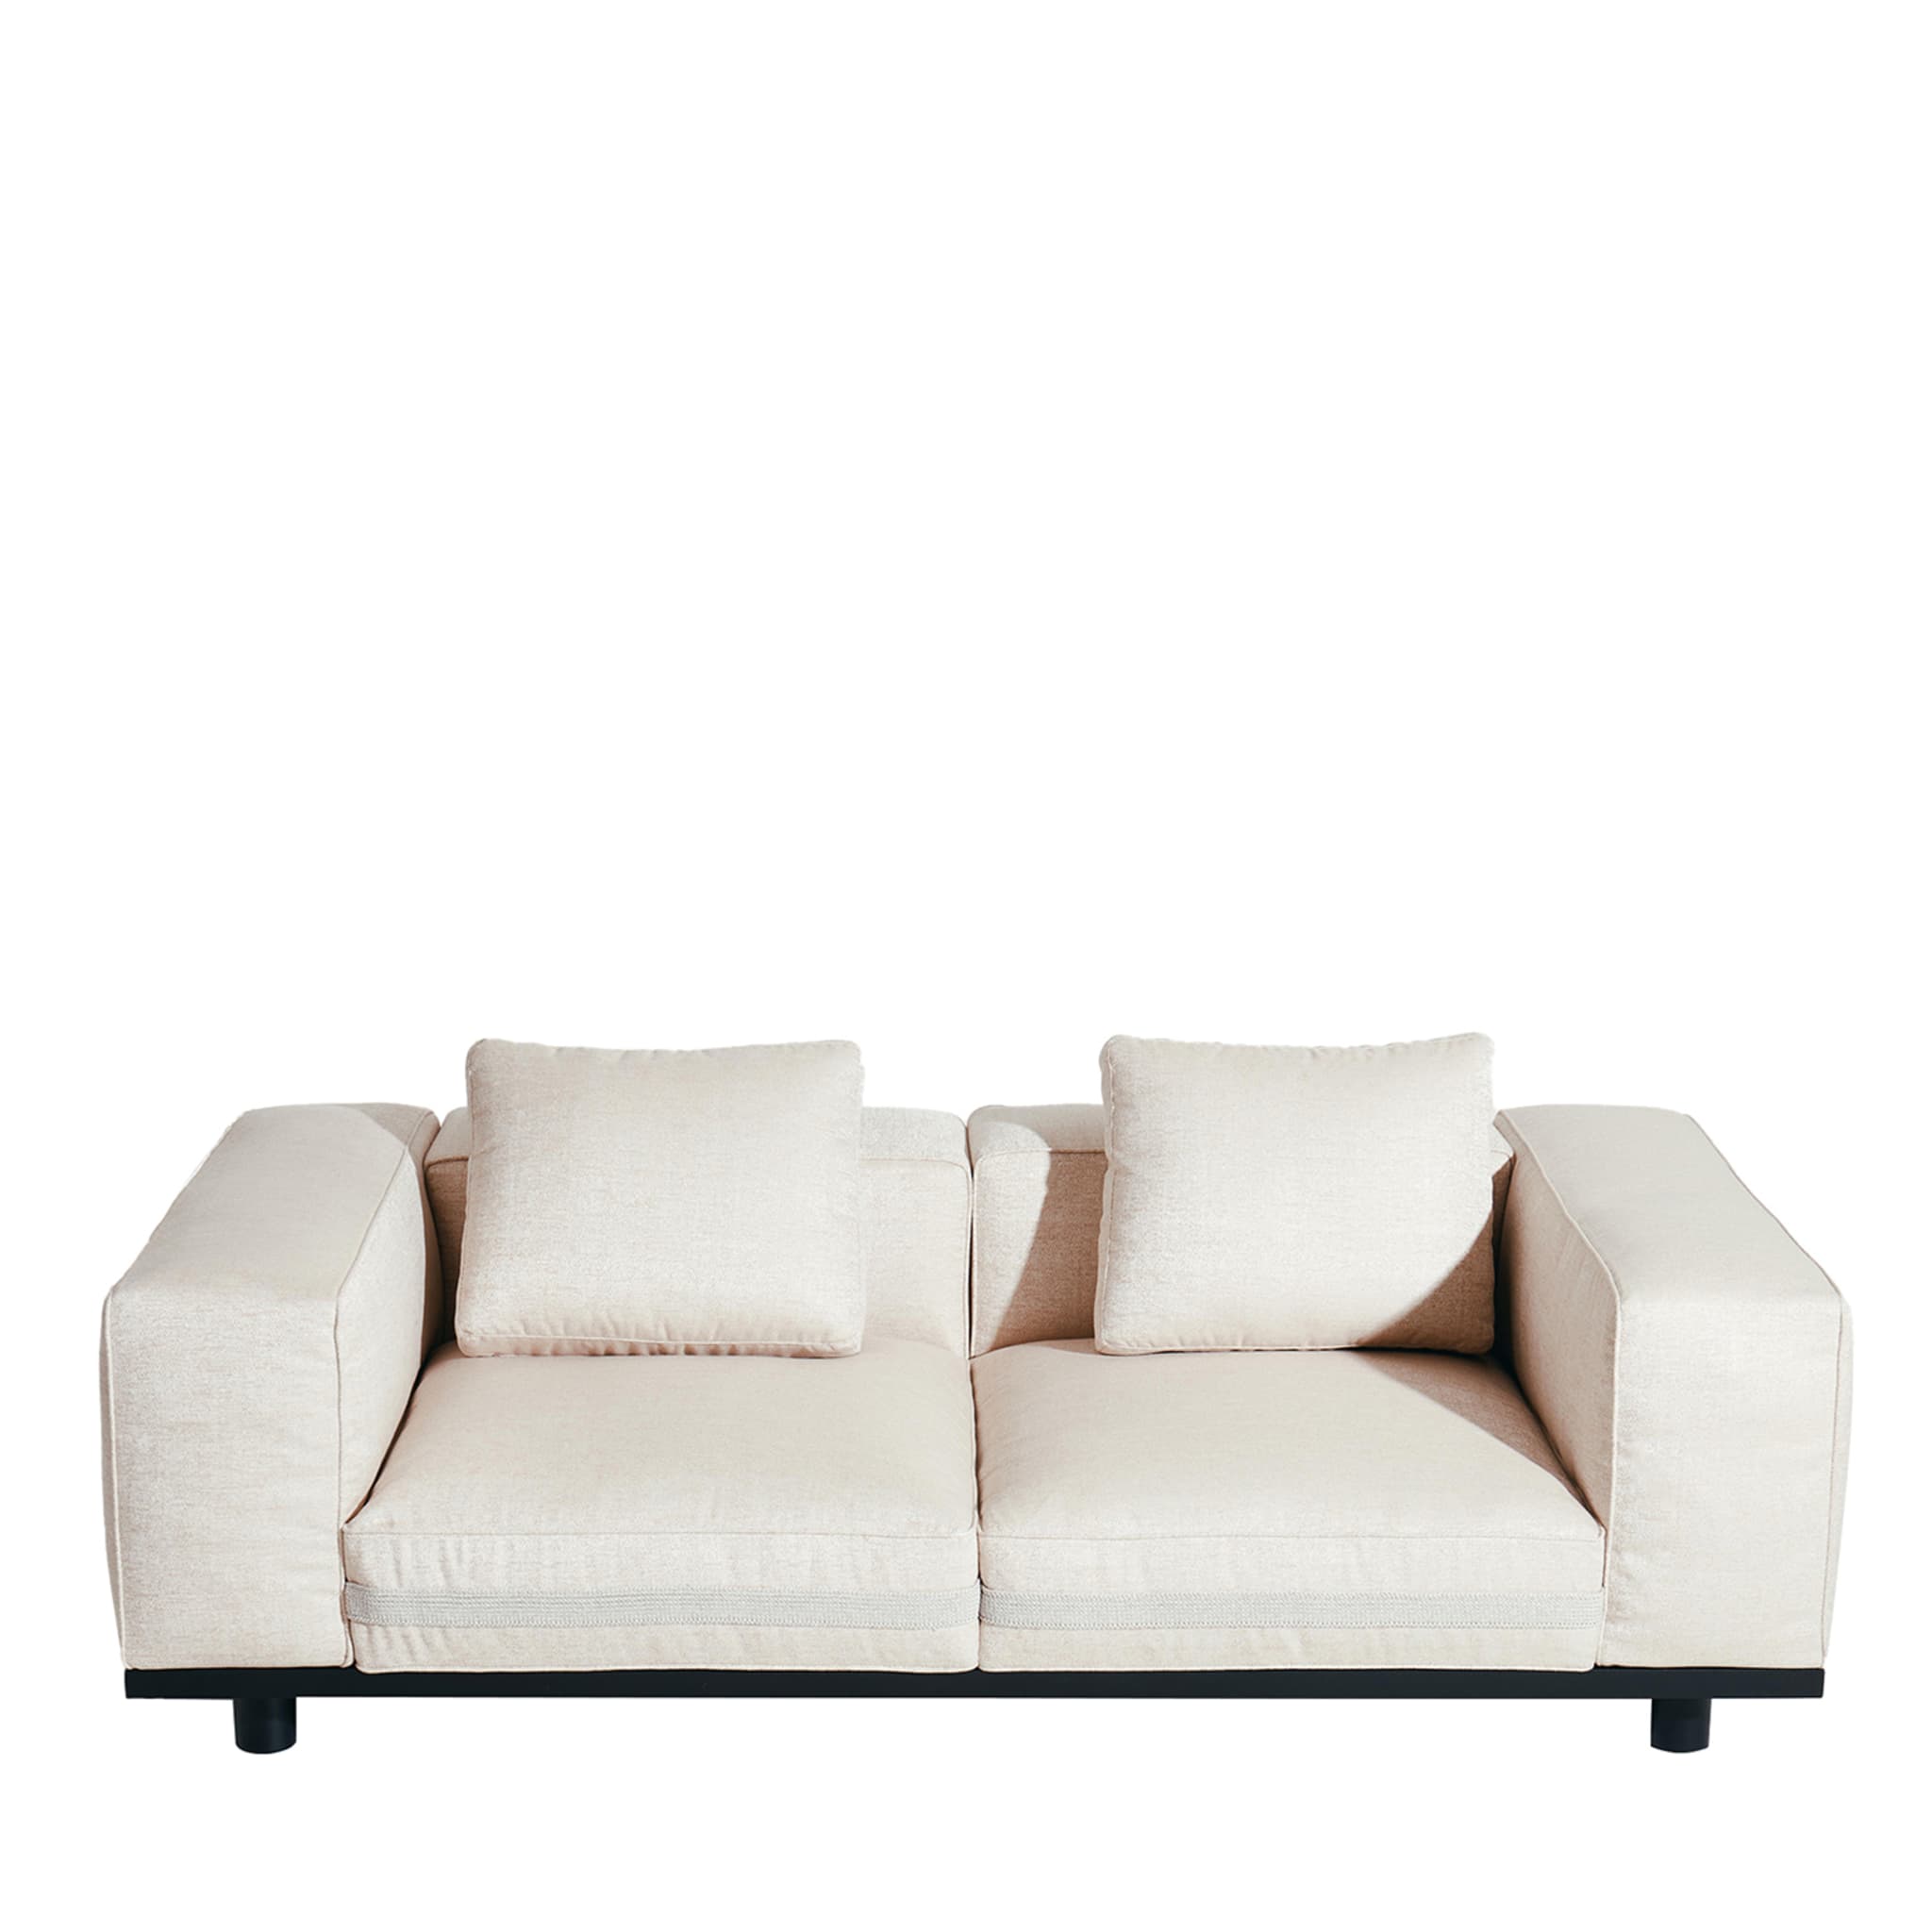 Saint Remy White 2-Seater Sofa #1 by Luca Nichetto - Vue principale